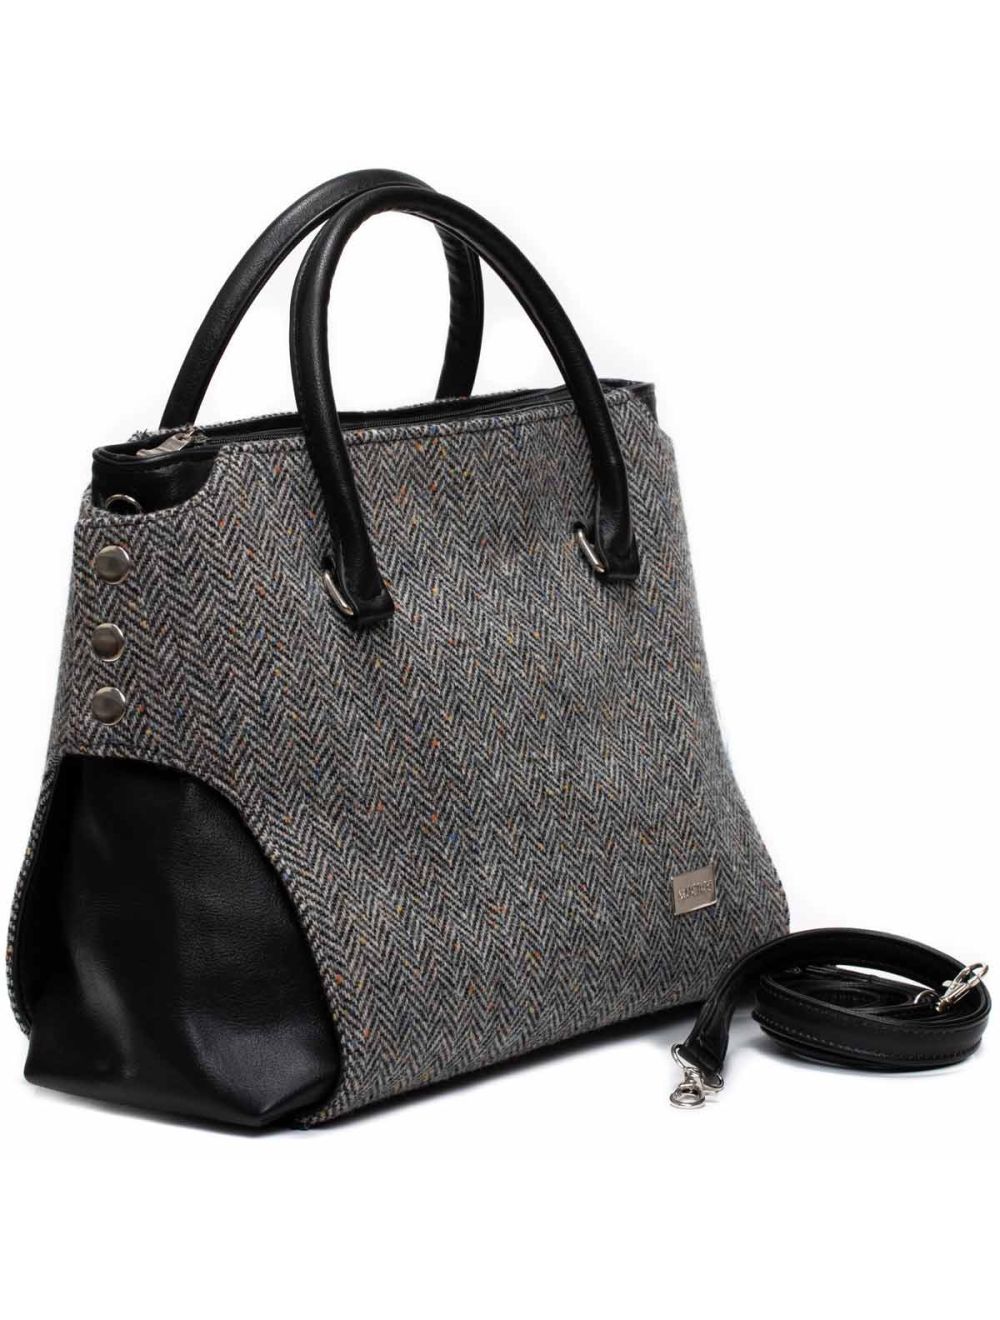 ETIENNE AGNIER Leather Purse Shoulder Bag Deep warm grey NWOT | Leather  purses, Purses, Leather